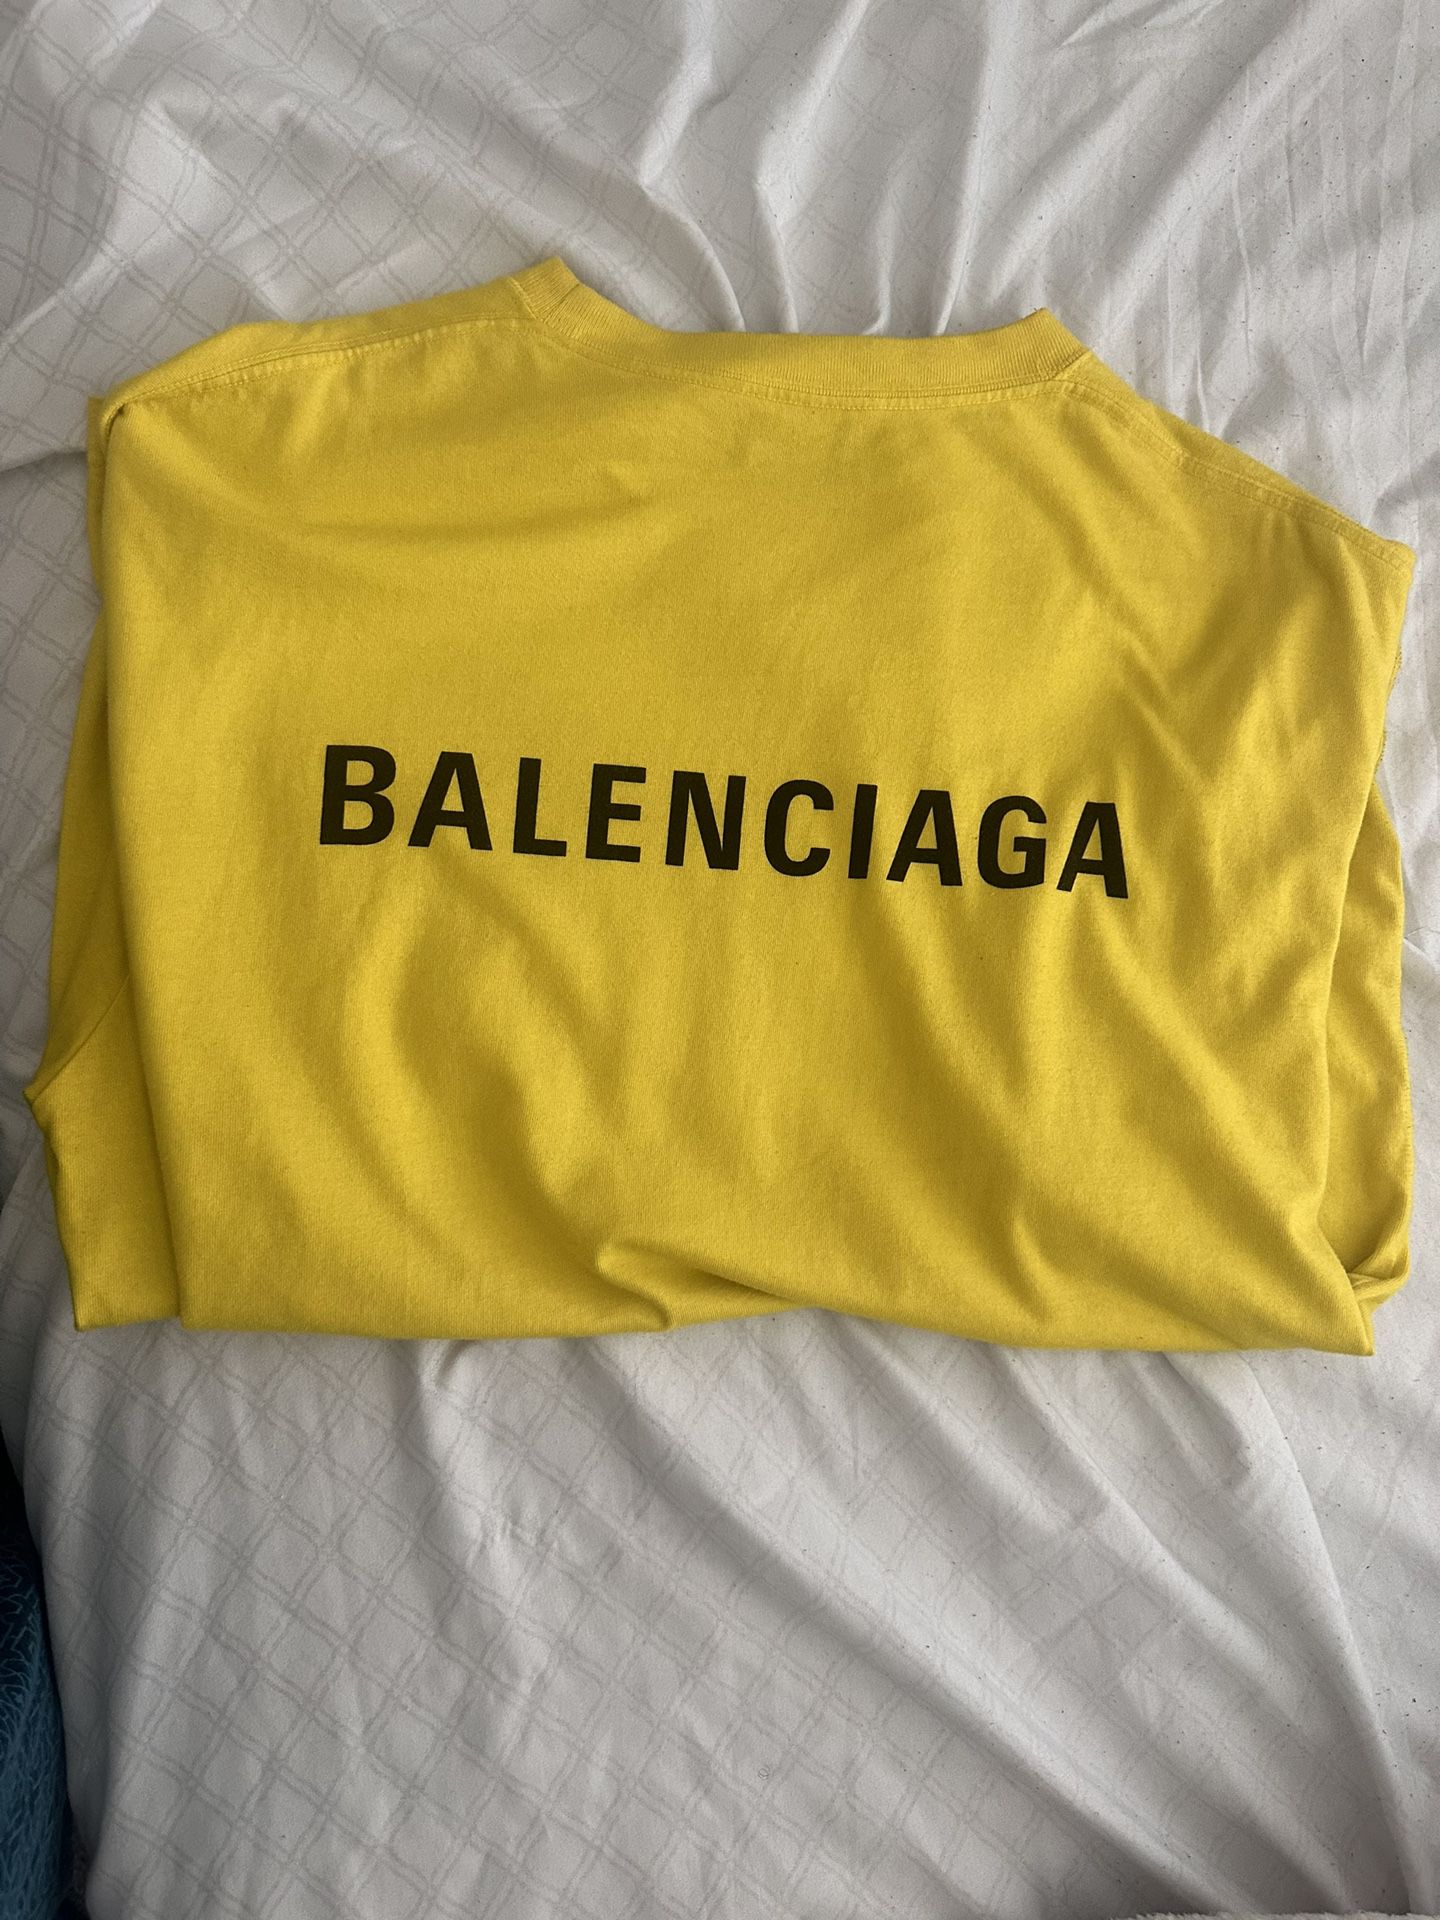 Balenciaga LOGO VINTAGE Shirt